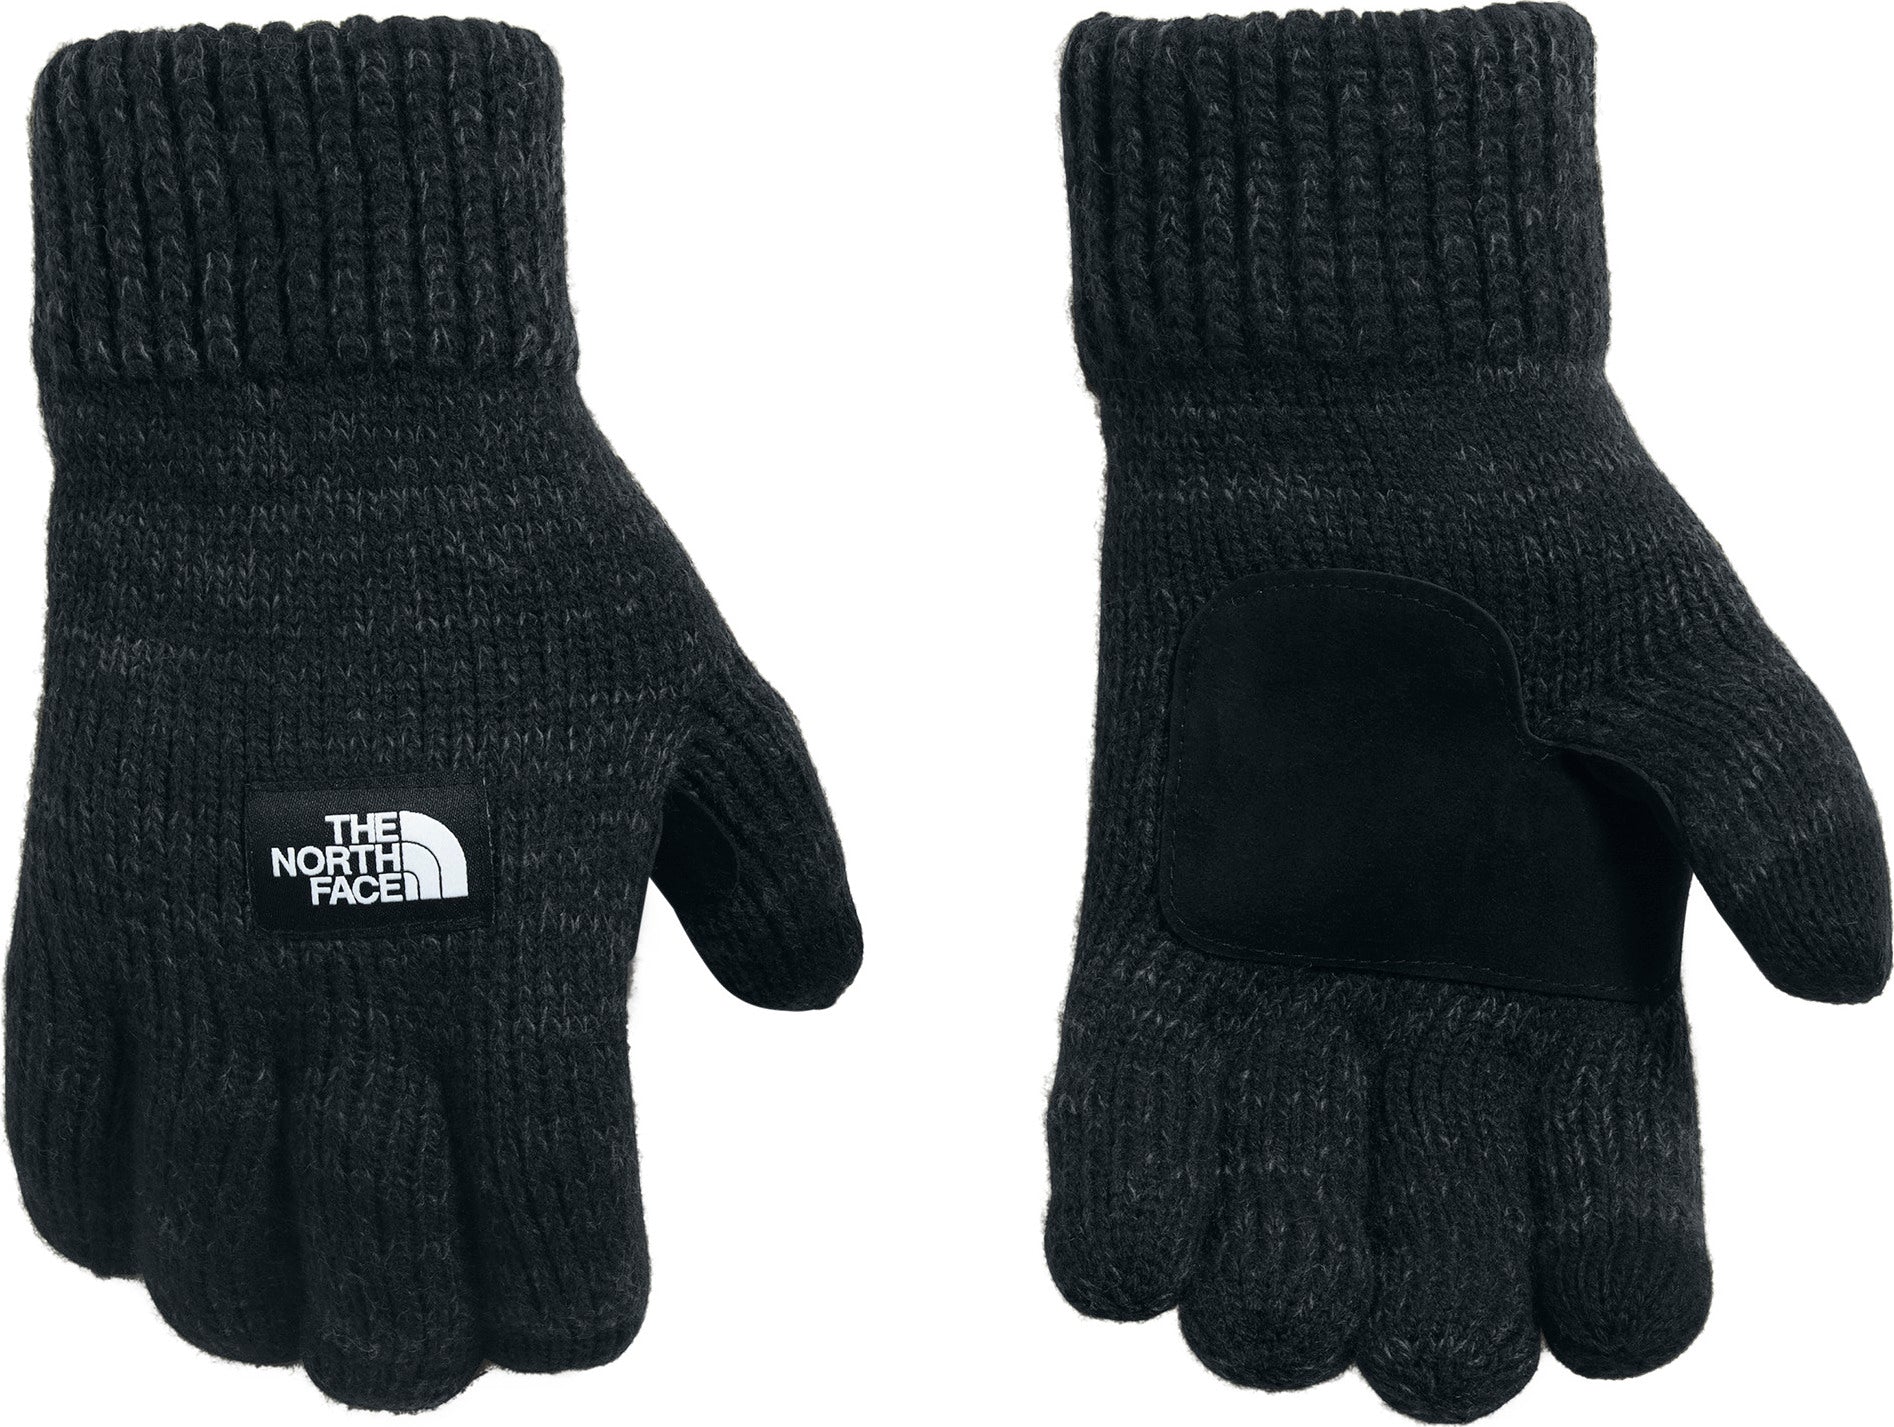 salty dog etip gloves